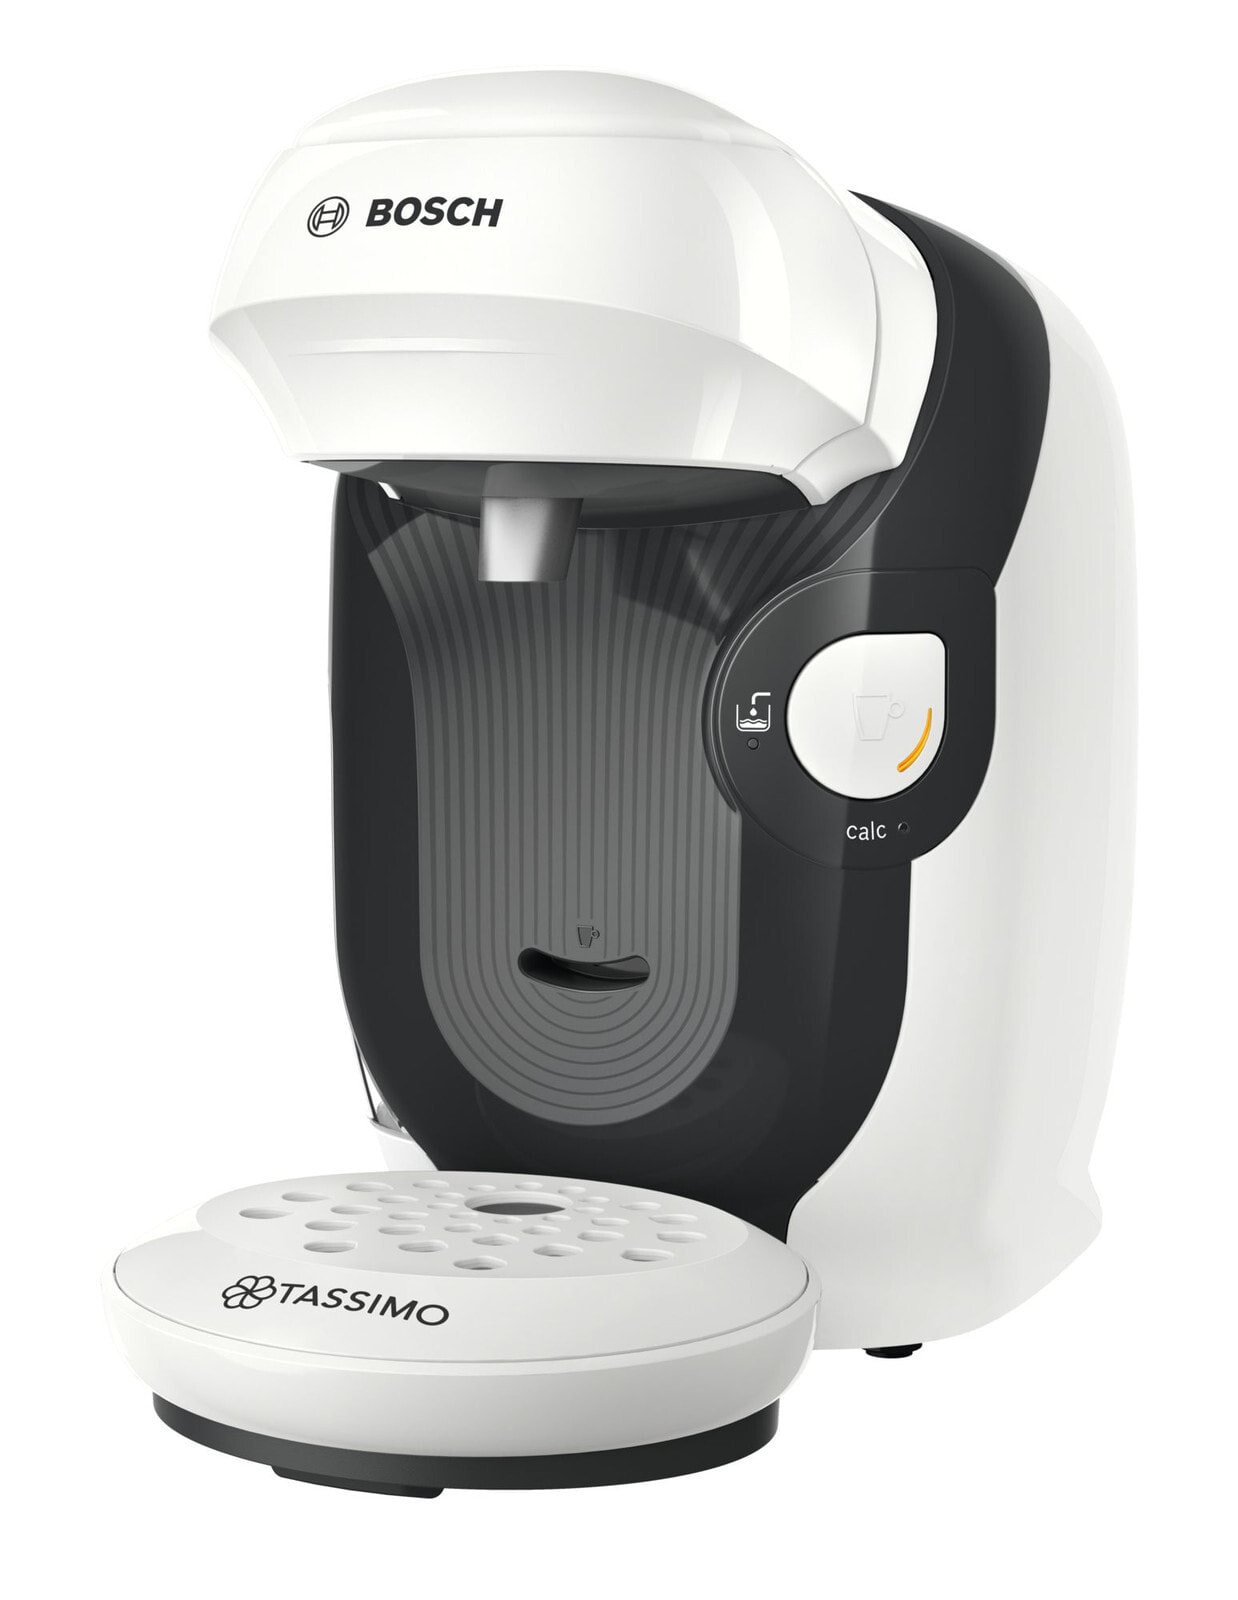 Bosch Tassimo Style TAS1104 кофеварка Капсульная кофеварка 0,7 L Автоматическая